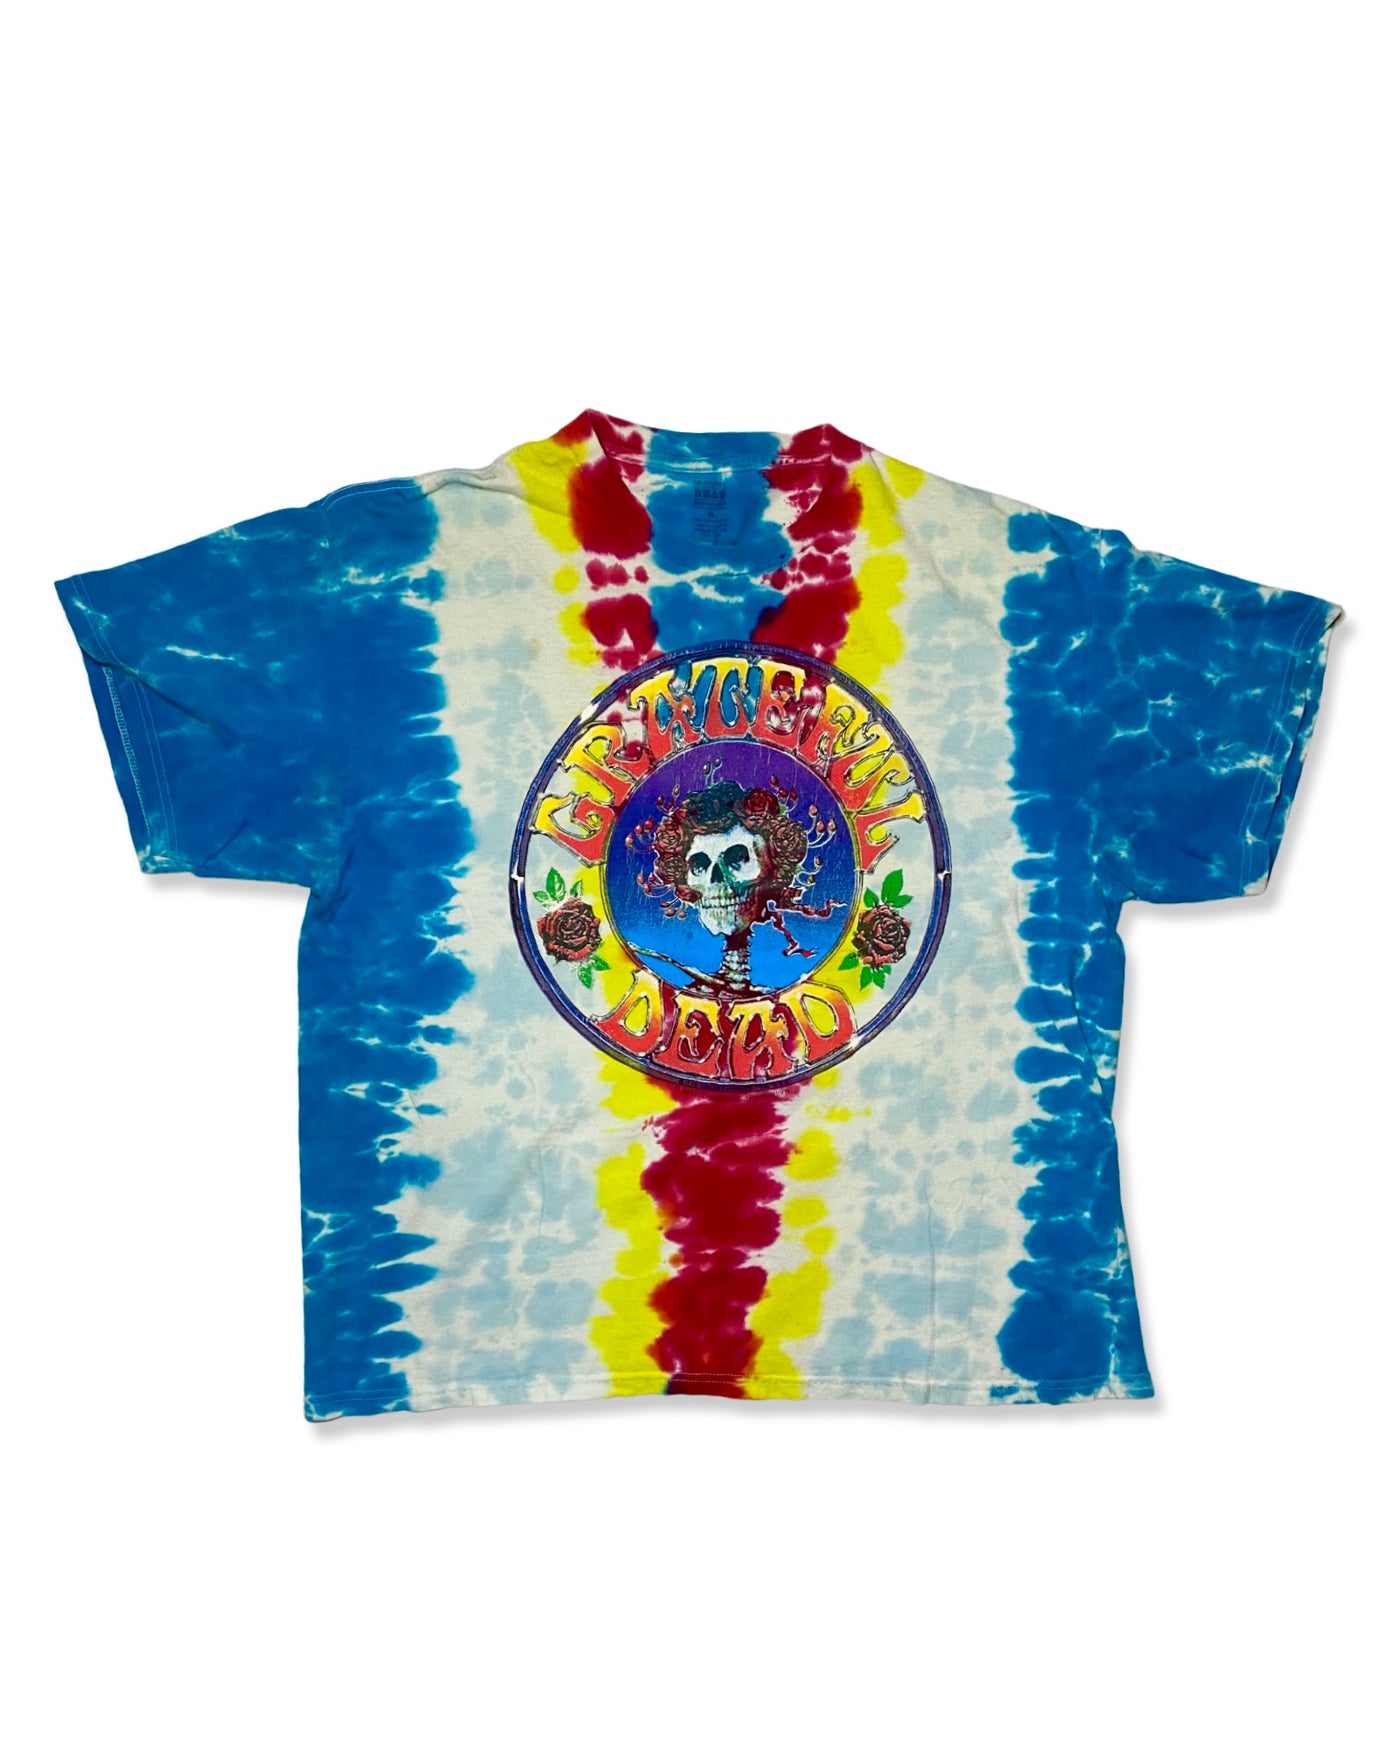 2011 Grateful Dead Reprint T-Shirt